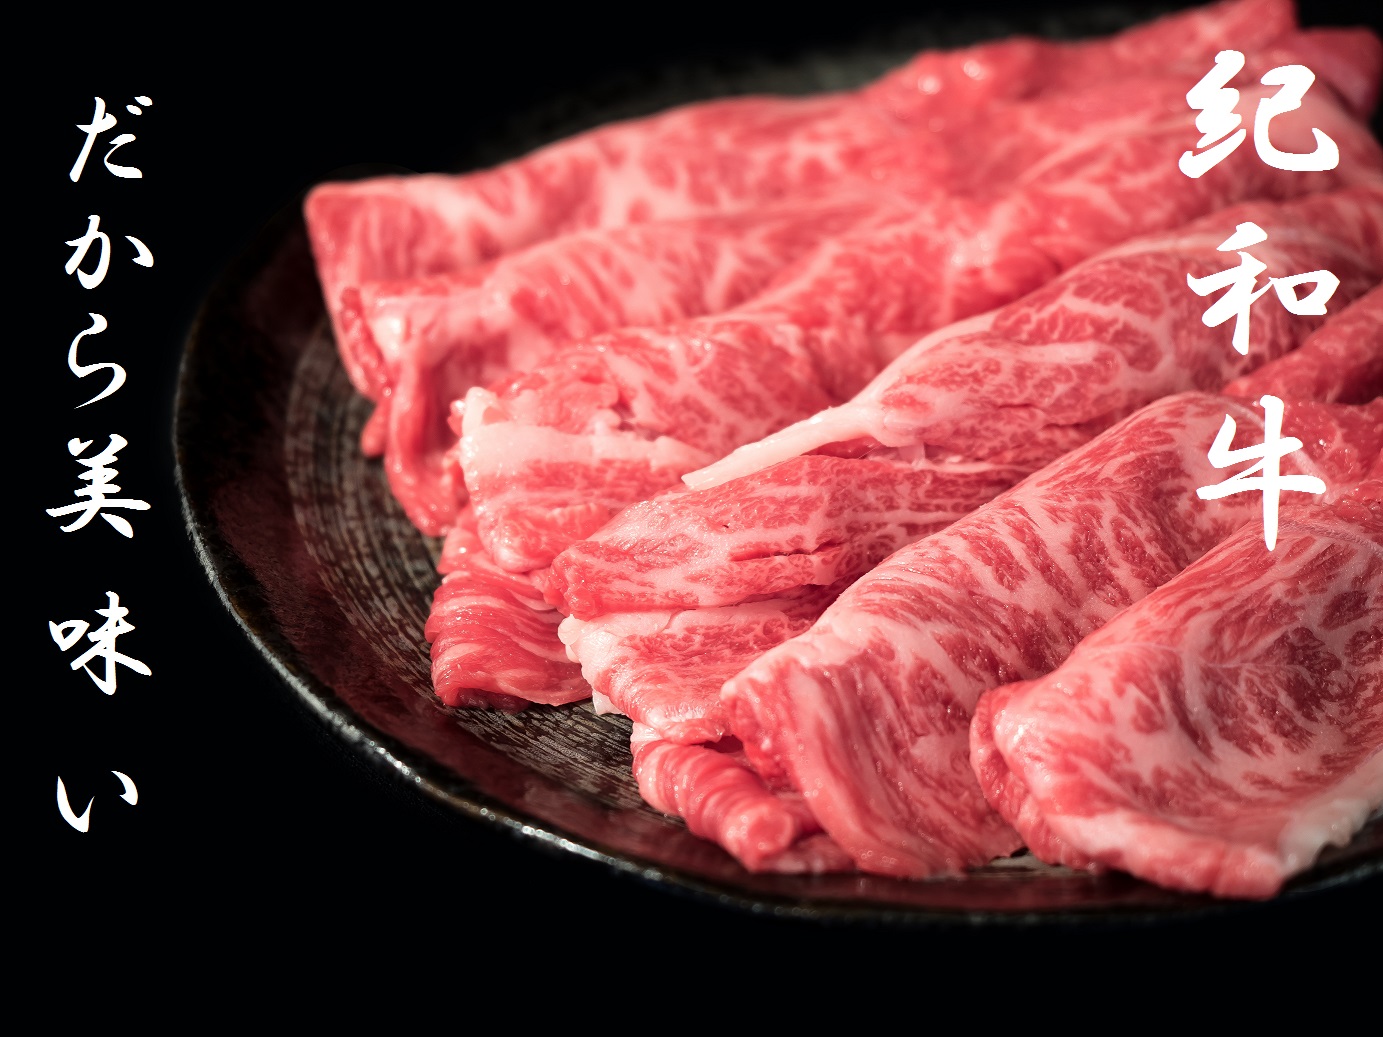 【正規販売店】 在庫限り ふるさと納税 TM-06 紀和牛すき焼き肉スライス 1.1kg